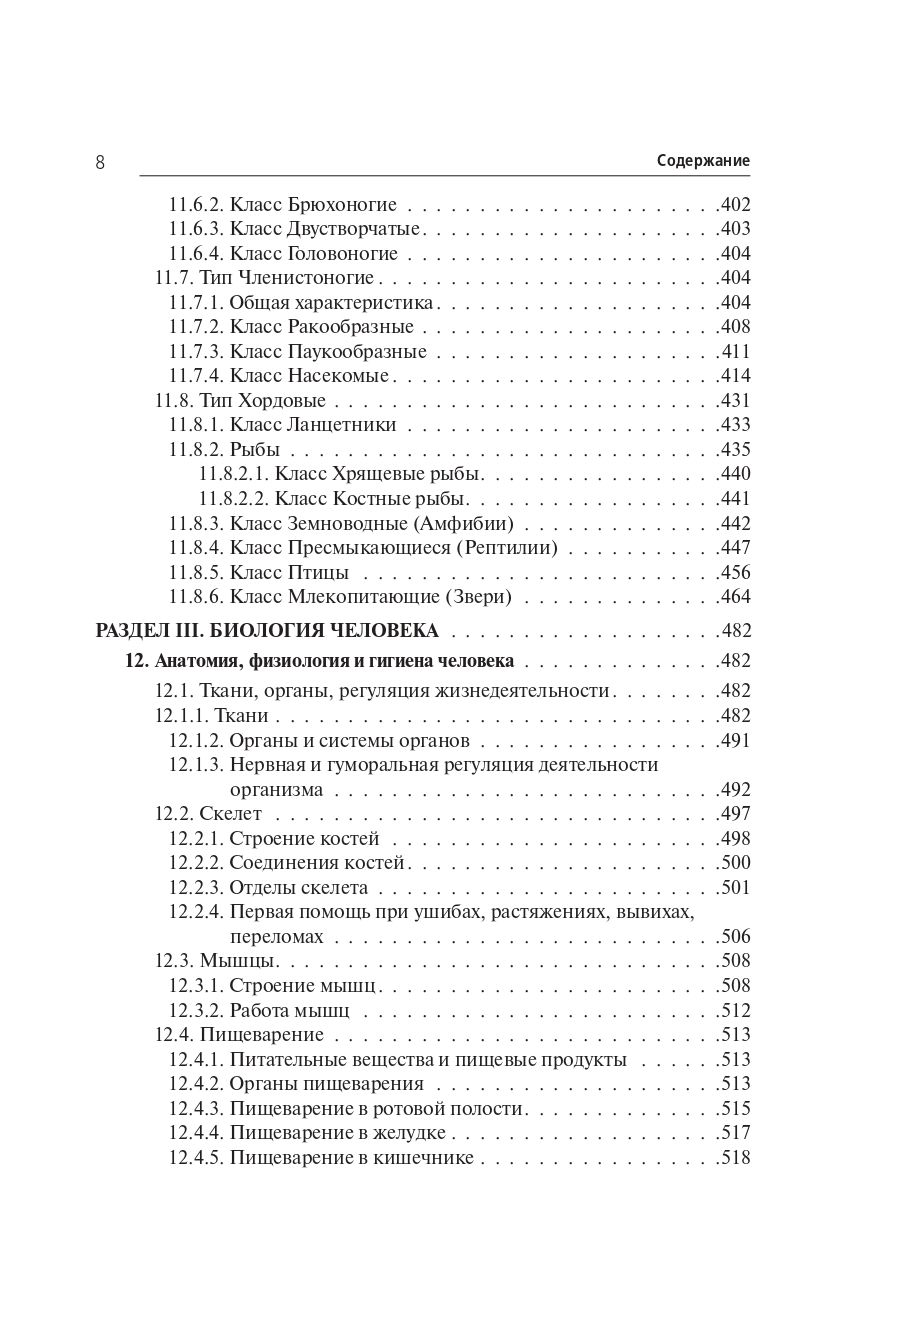 Биология. Большой справочник для подготовки к ЕГЭ и ОГЭ. Изд. 9-е, перераб. и доп.